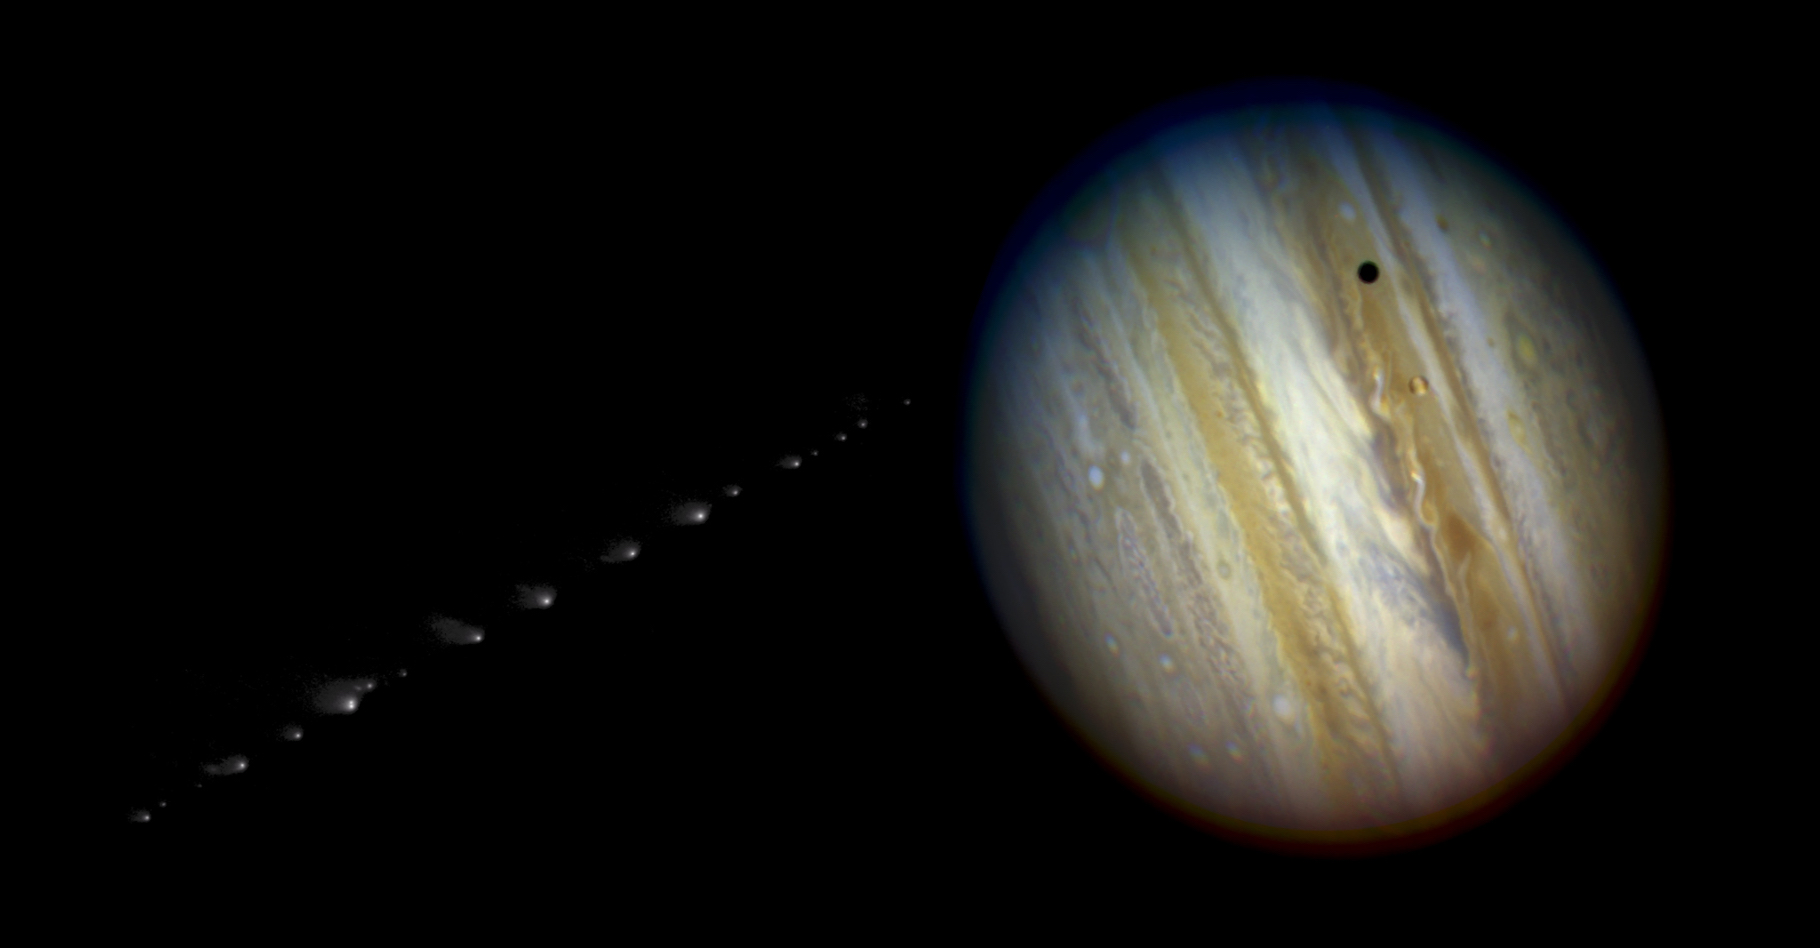 En 1994, la comète Shoemaker-Levy 9 est entrée en collision avec Jupiter. Un événement largement couvert par les médias et illustré ici par cette image composite. © Nasa, ESA, H. Weaver and E. Smith (STScI) and J. Trauger and R. Evans (Nasa's Jet Propulsion Laboratory), Domaine public